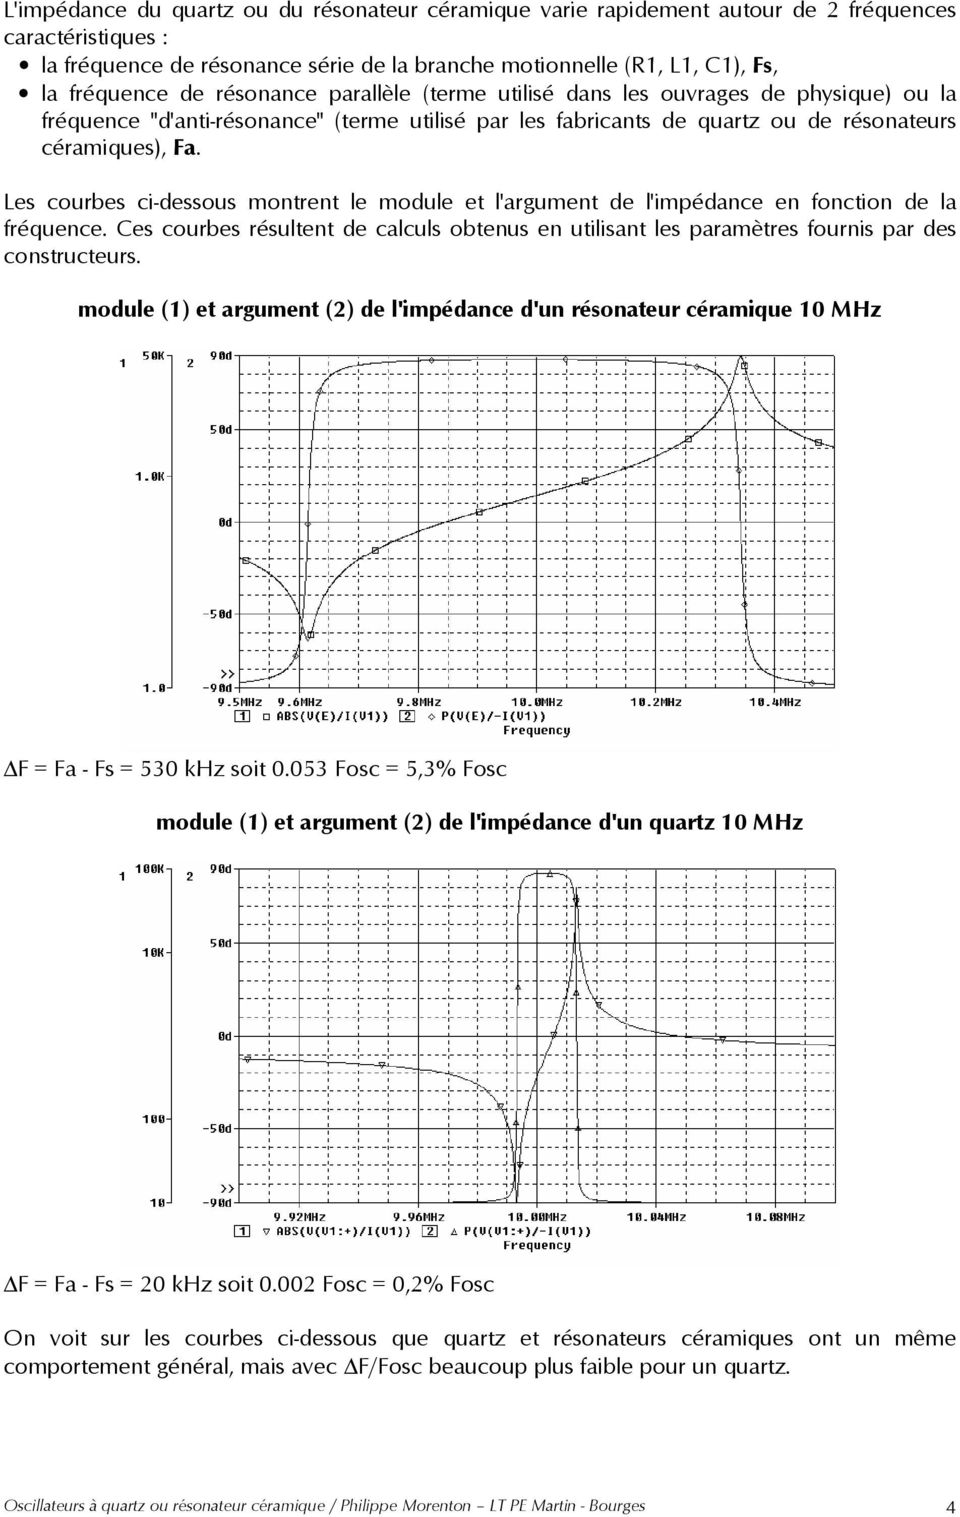 Les courbes ci-dessous montrent le module et l'argument de l'impédance en fonction de la fréquence. Ces courbes résultent de calculs obtenus en utilisant les paramètres fournis par des constructeurs.